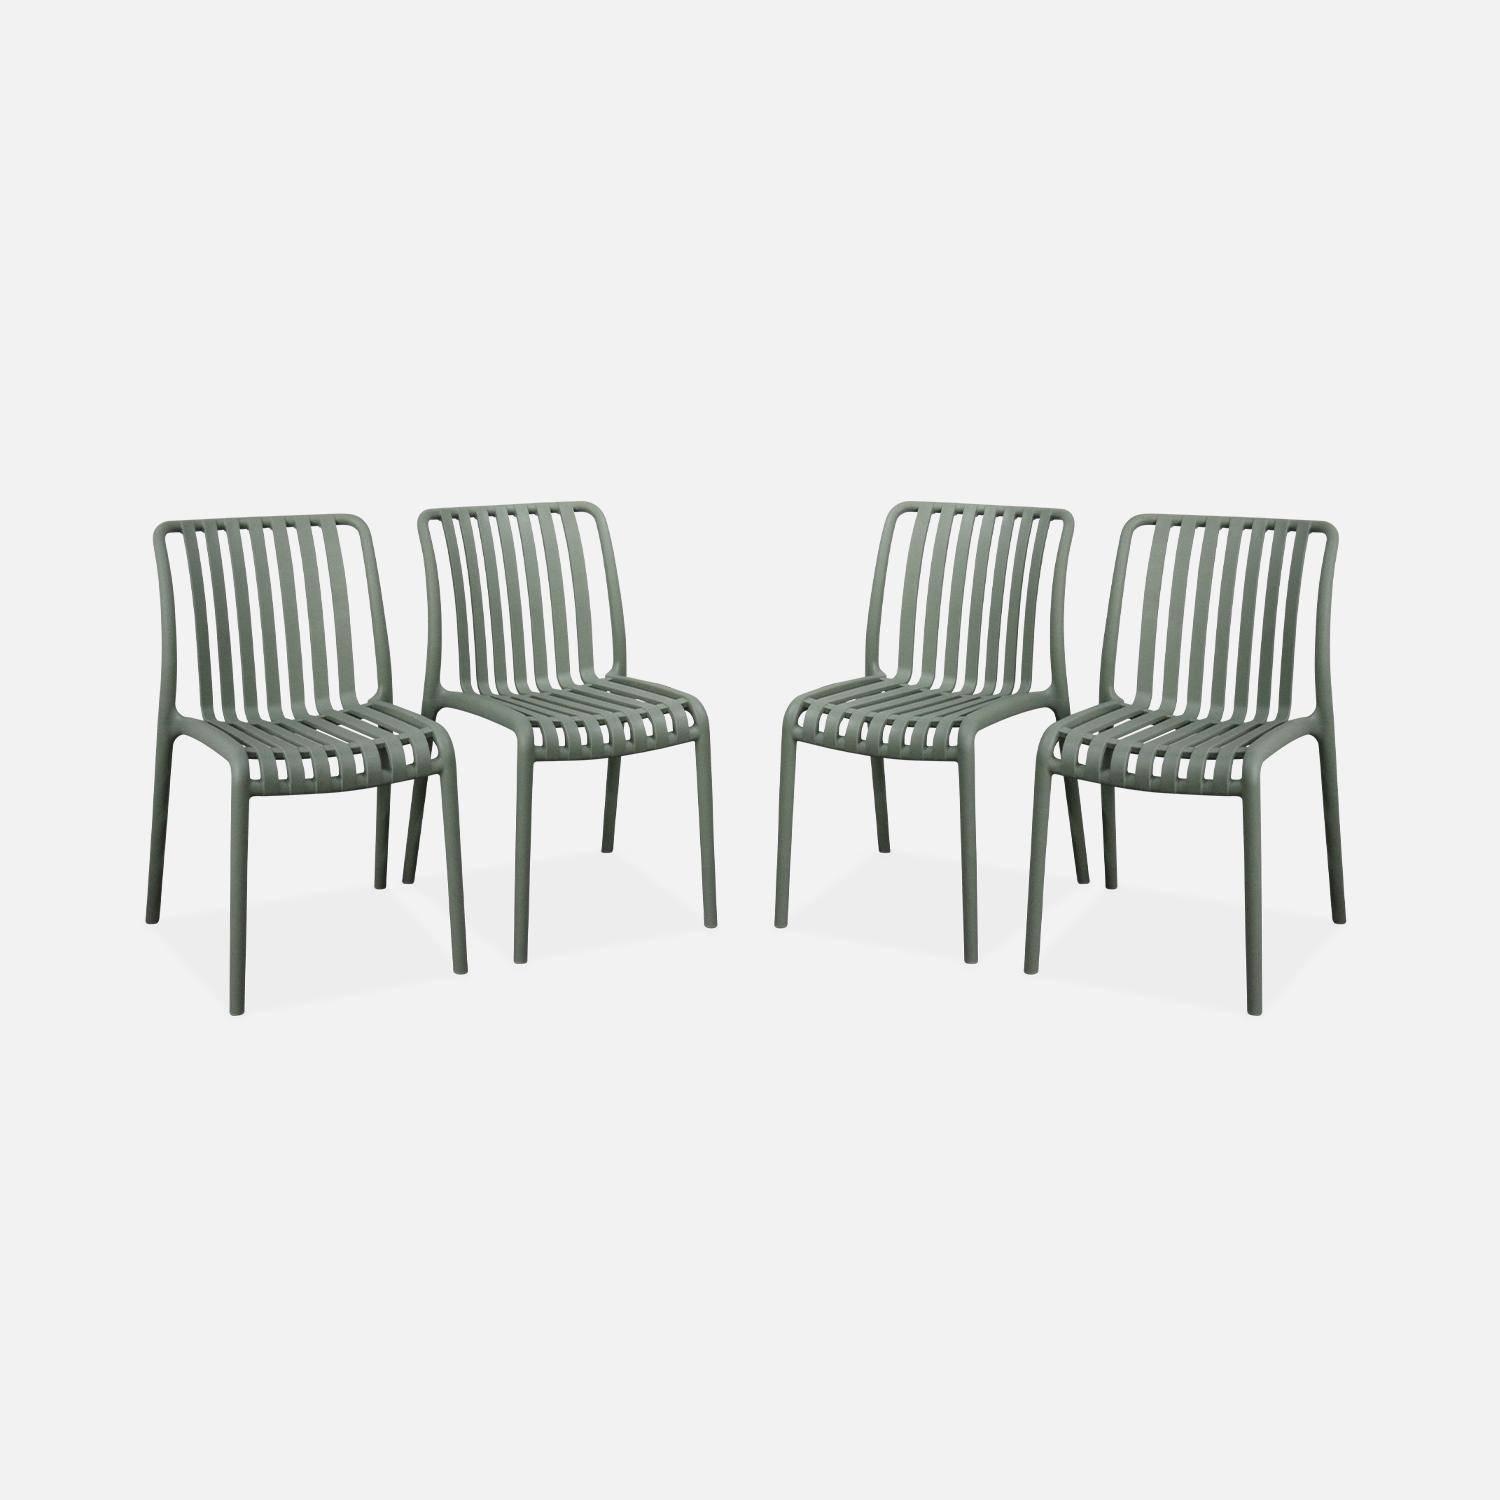 Lot de 4 chaises de jardin en plastique vert de gris, empilables, déjà montées,sweeek,Photo1